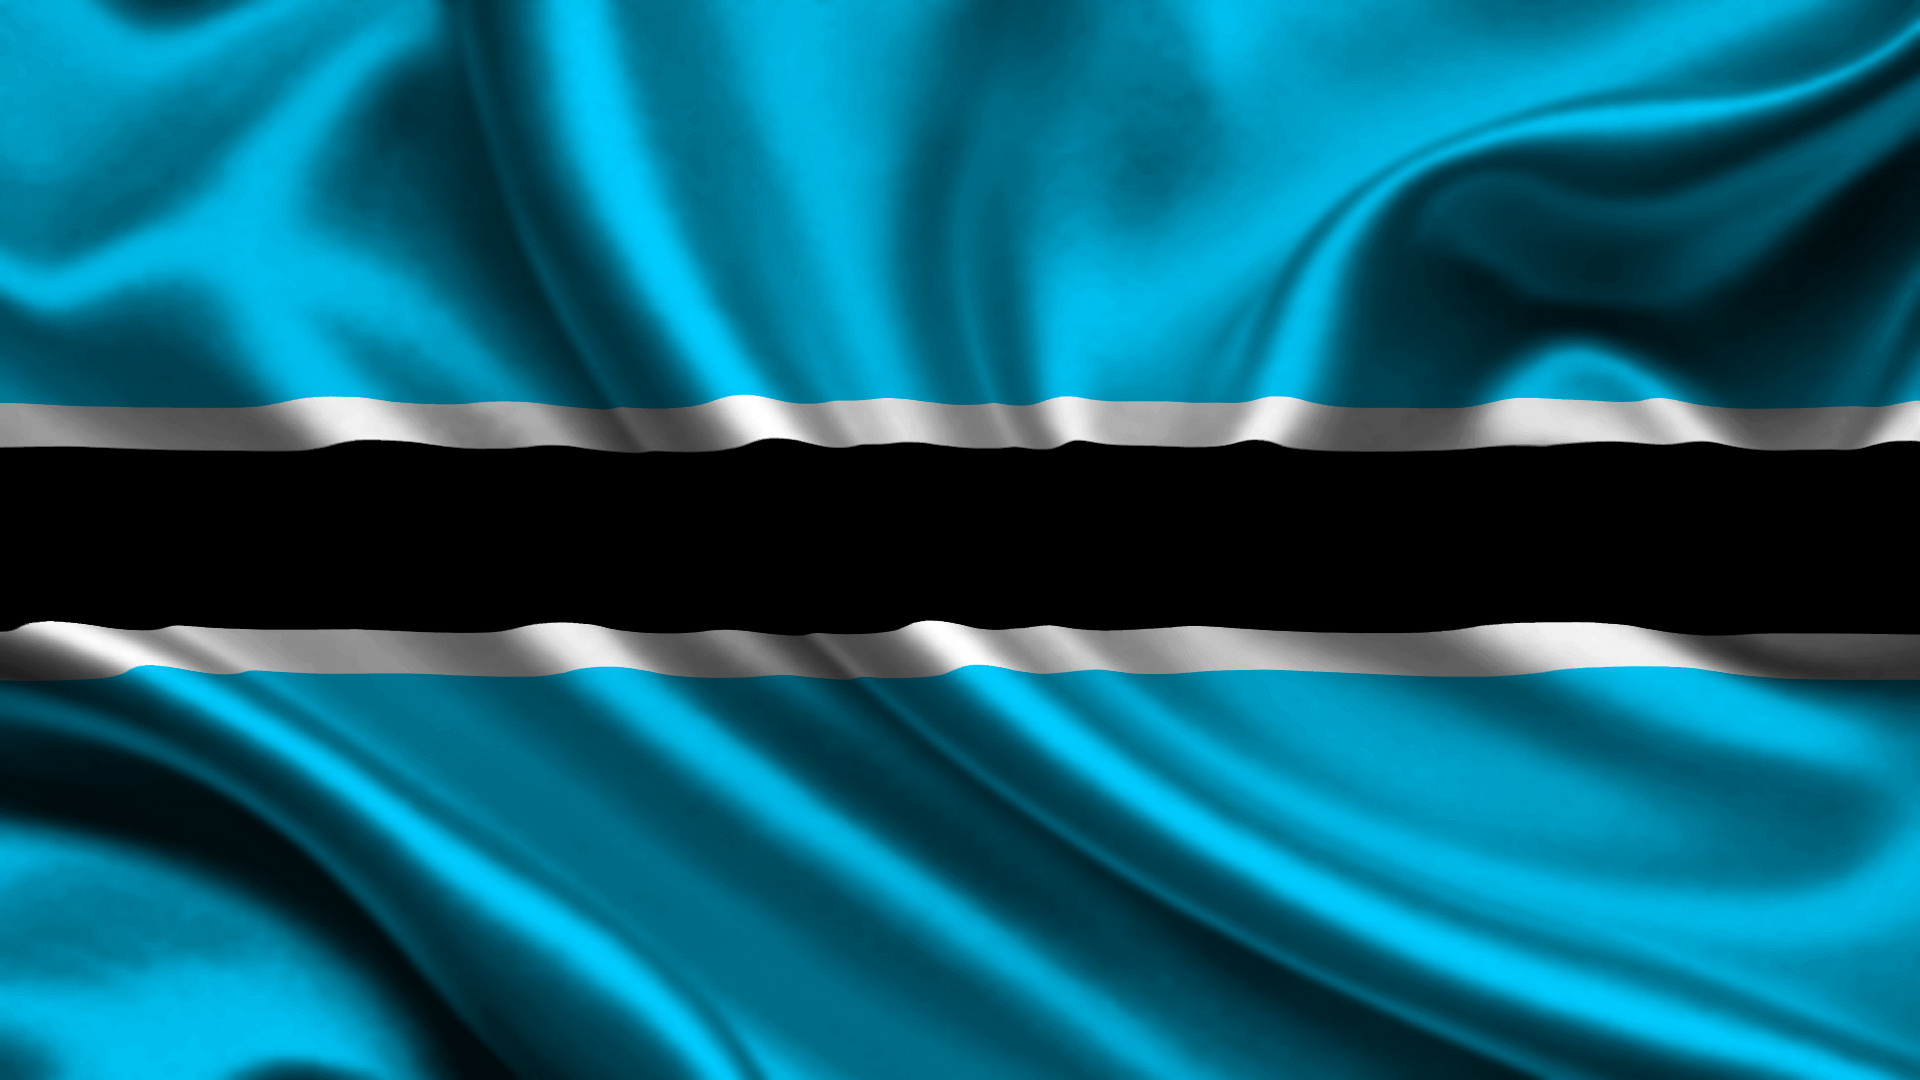 Botswana flag, Cultural symbol, Patriotic pride, Flag of Botswana, 1920x1080 Full HD Desktop